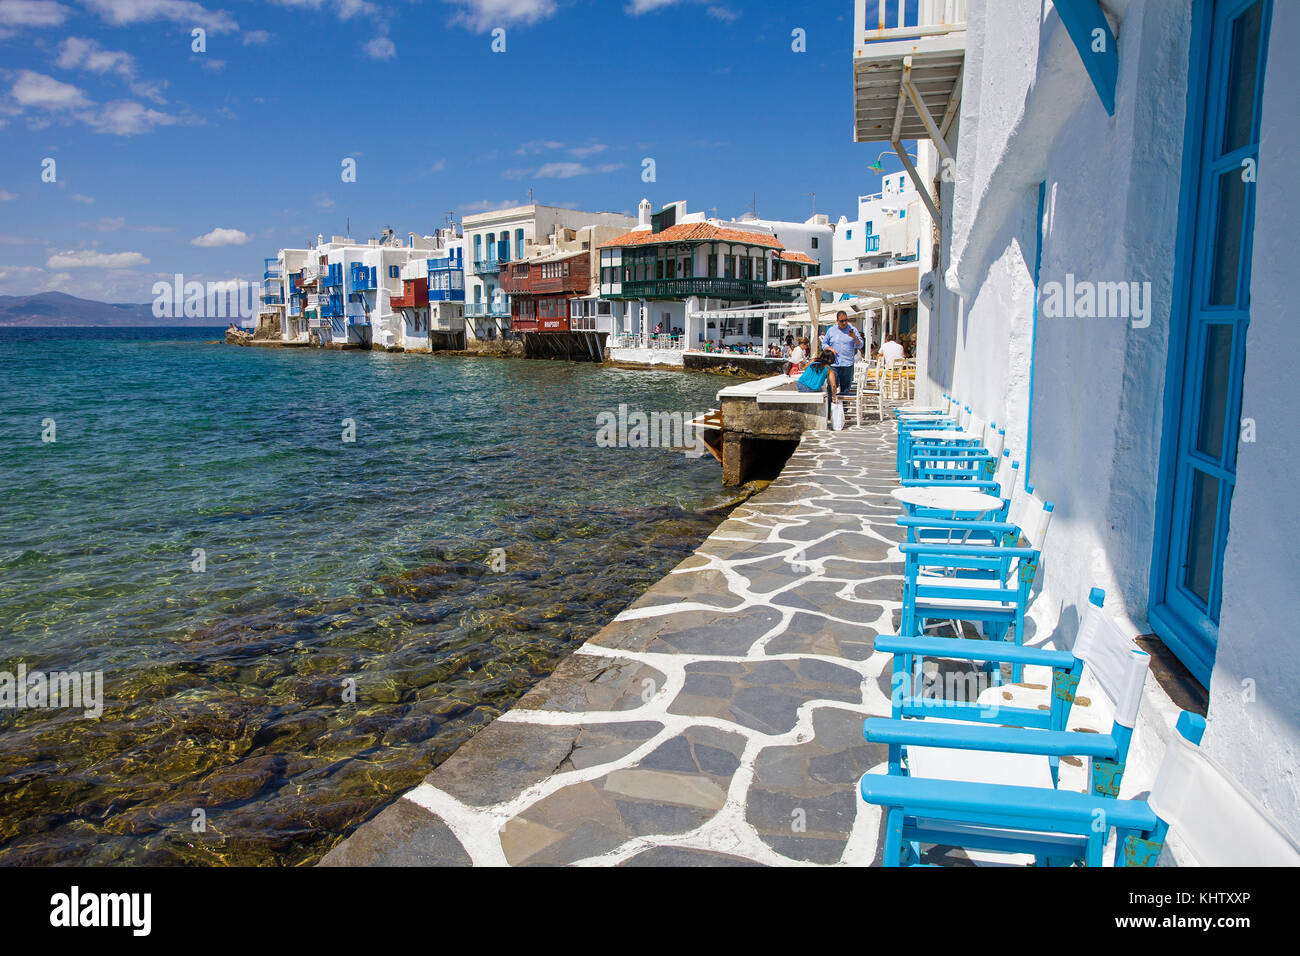 Klein Venedig in Mykonos-Stadt, Little Venice at Mykonos-town, Mykonos island, Cyclades, Aegean, Greece, Stock Photo